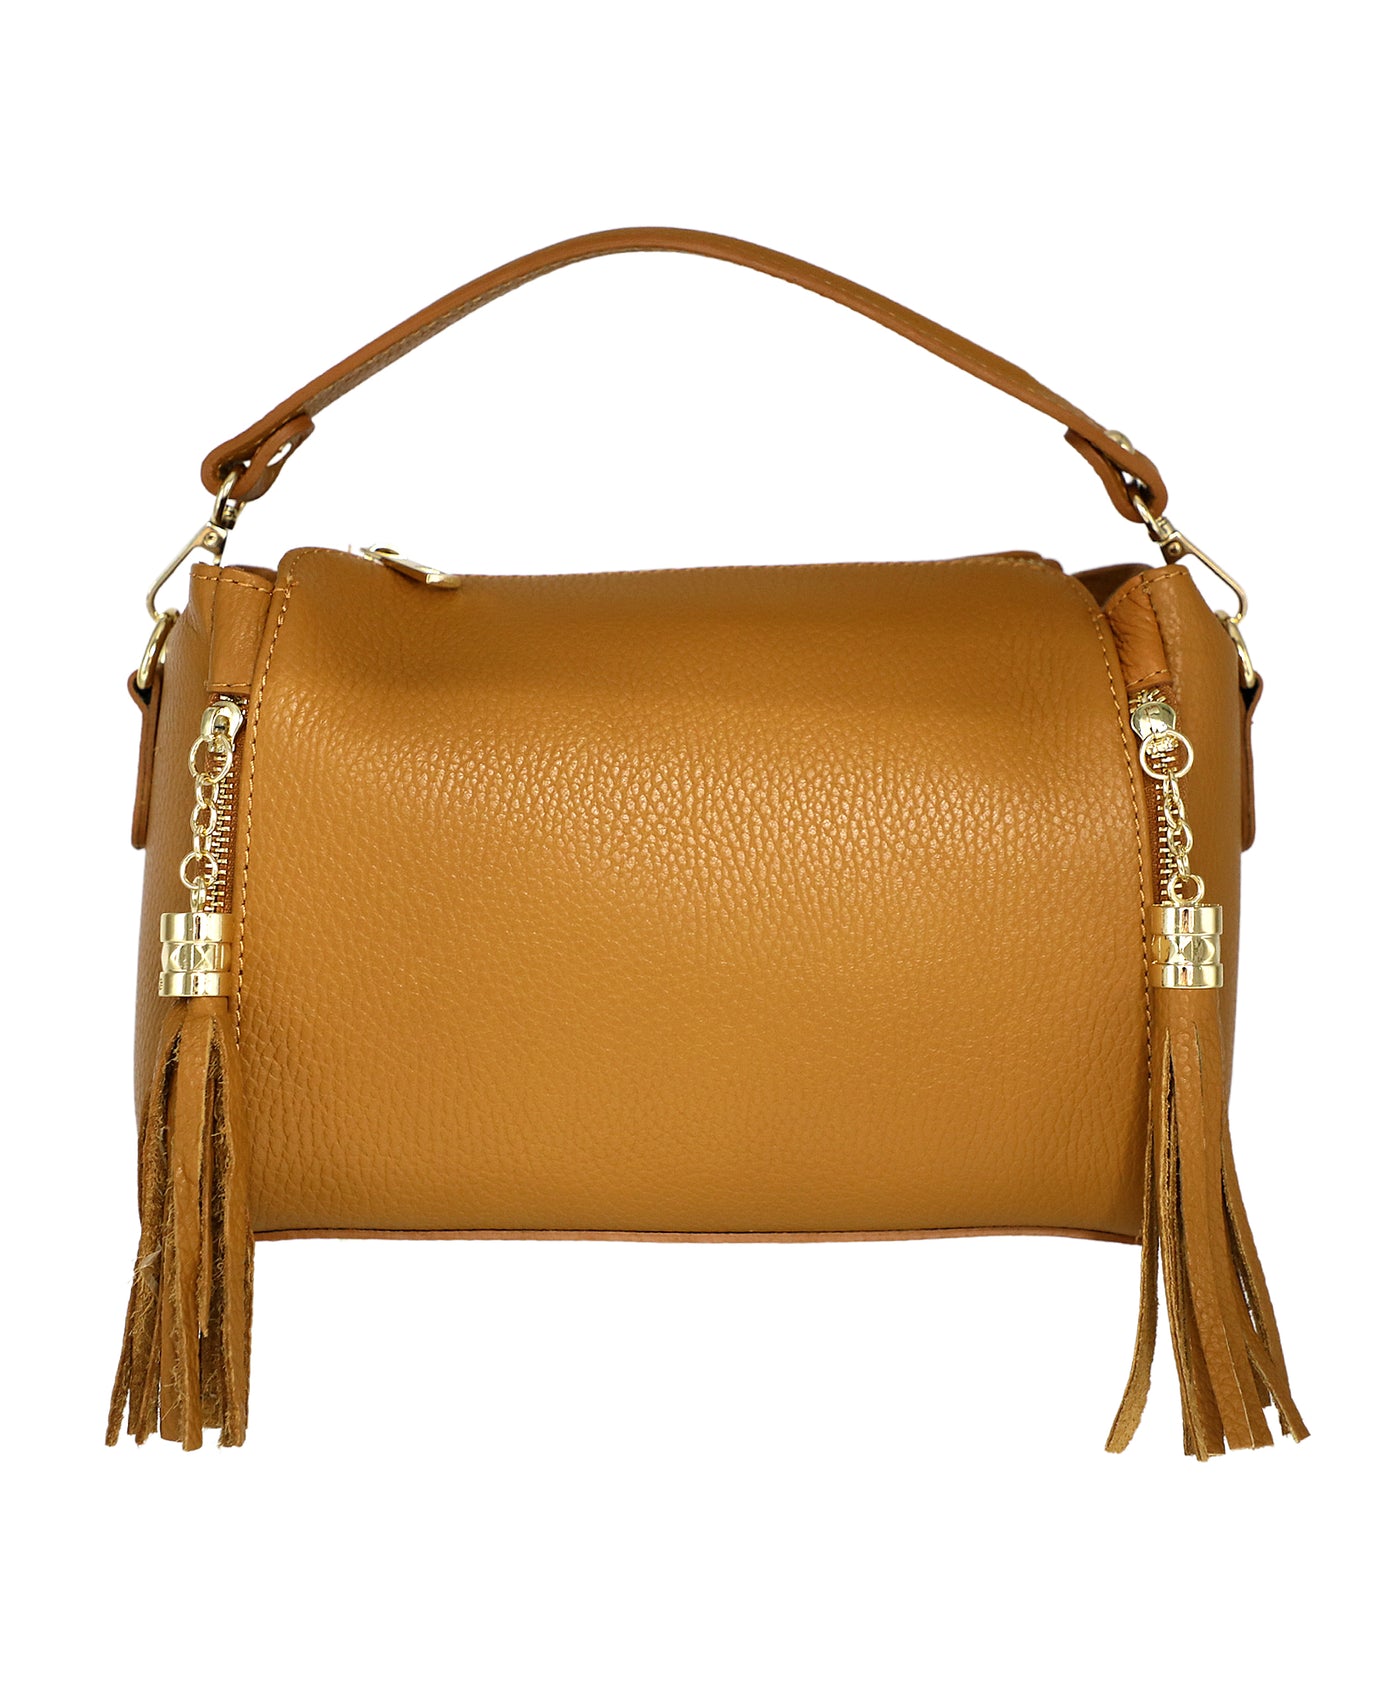 Leather Handbag w/ Tassels image 1